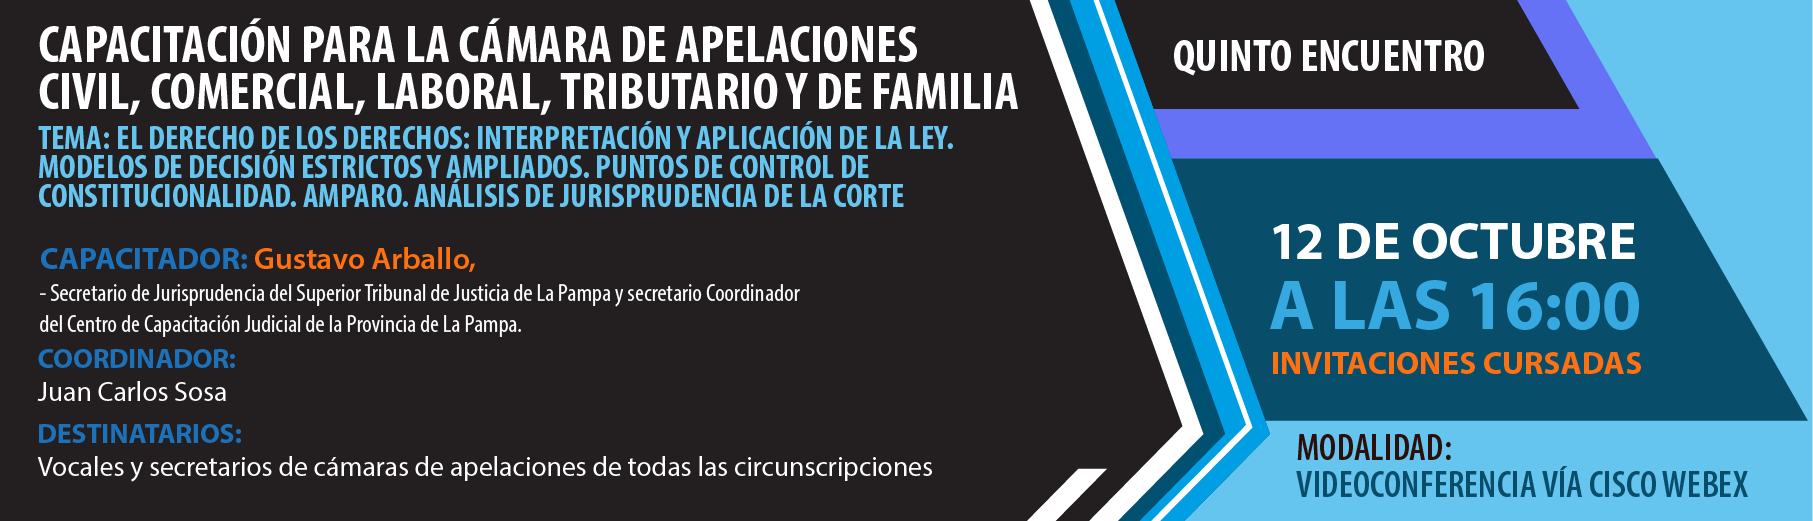 P6_Capacitacin_para_la_cmara_de_apelaciones-01